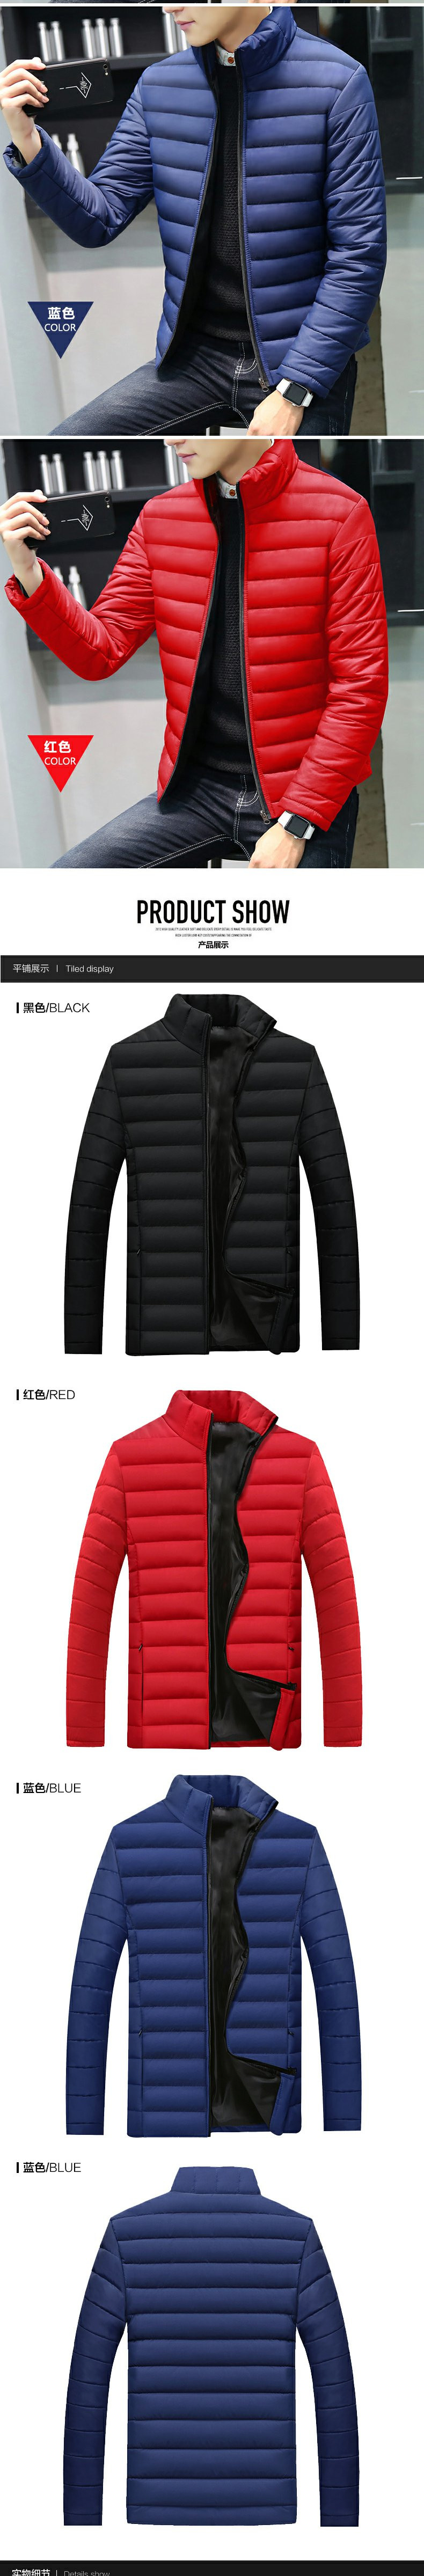 男士韩版外套2017冬季新款修身加厚加绒青年棉衣短款休闲棉袄男装ouf580